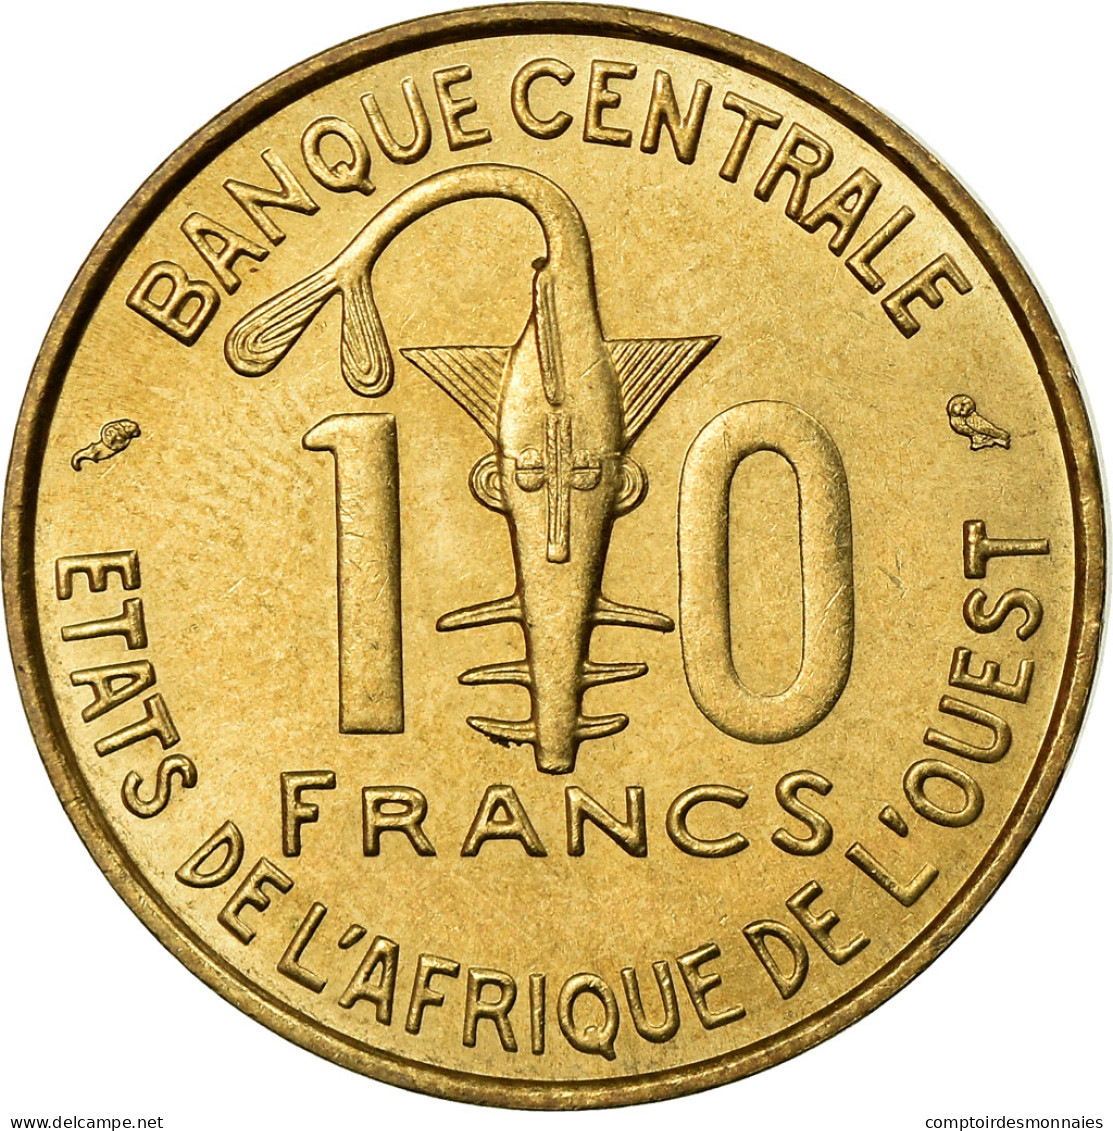 Monnaie, West African States, 10 Francs, 1964, Paris, SUP, Aluminum-Bronze, KM:1 - Côte-d'Ivoire